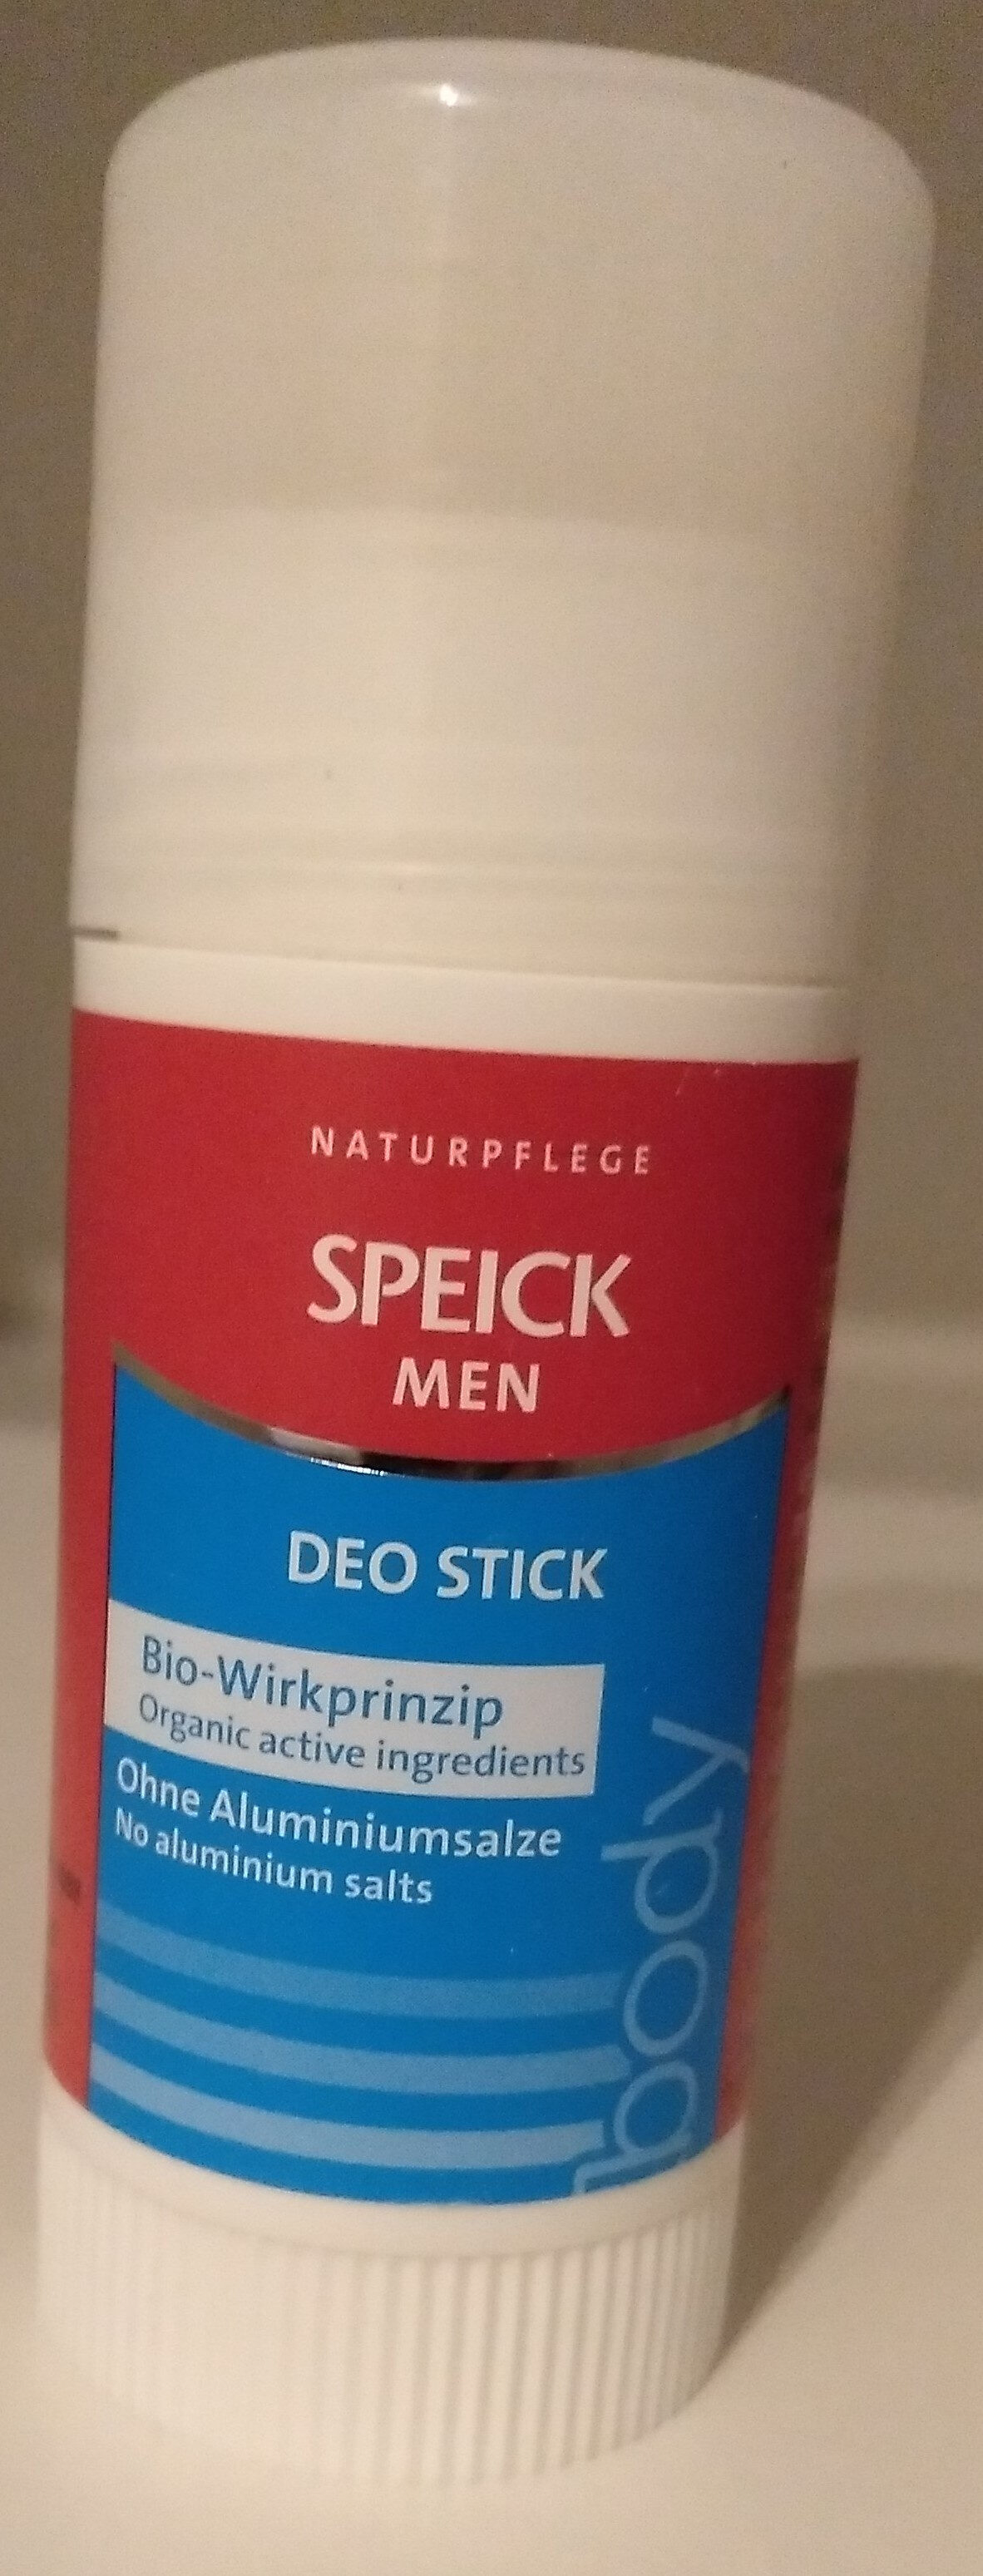 Speik Men deo stick - 製品 - de